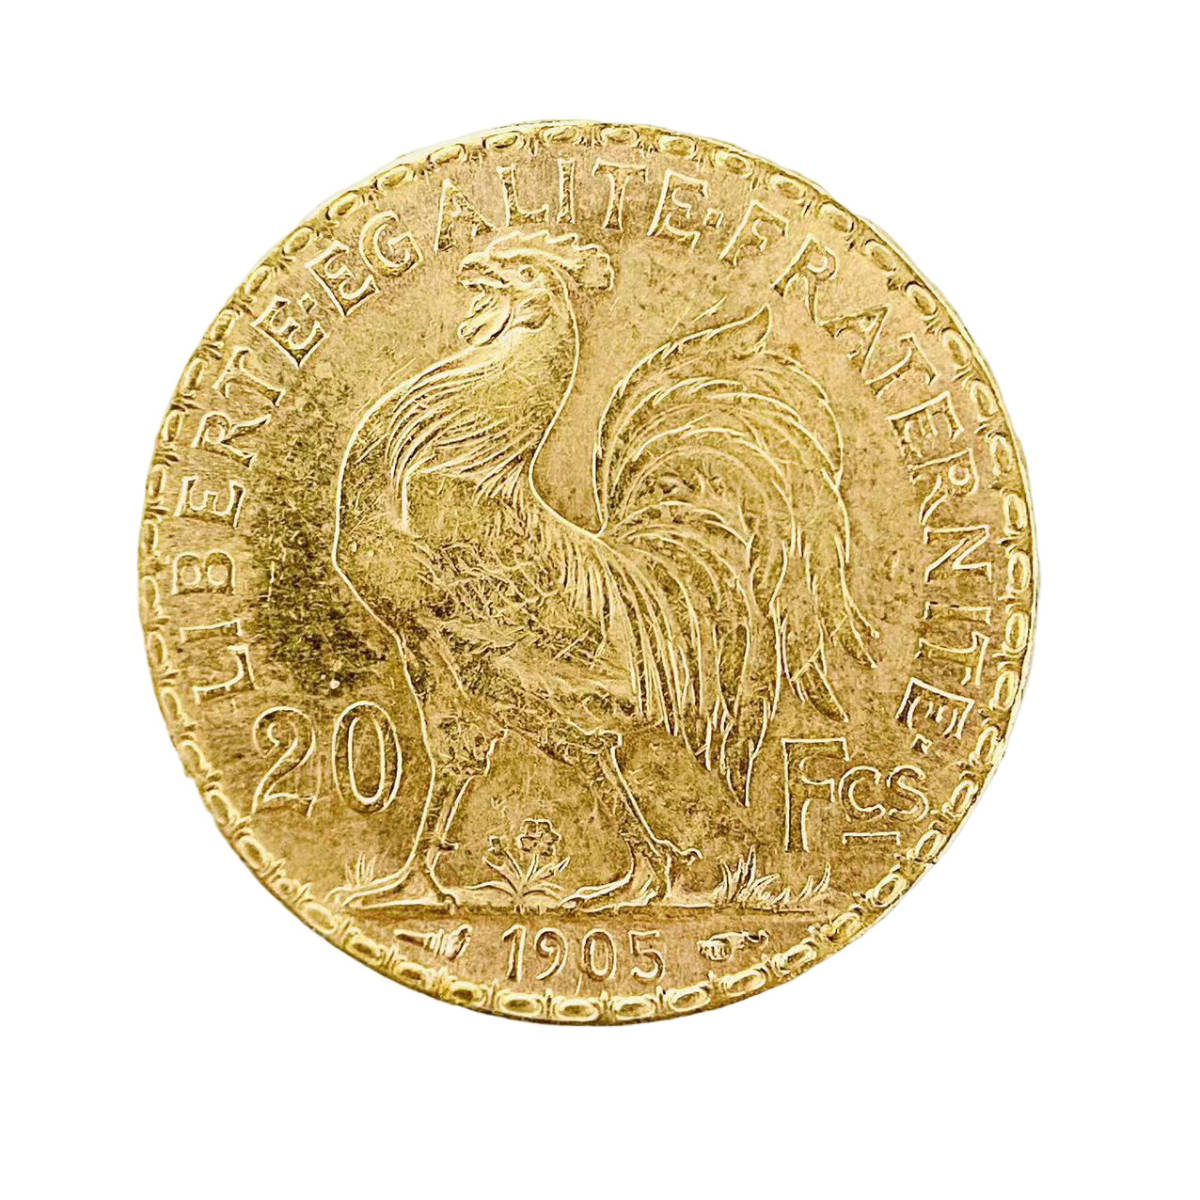 フランス マリアンヌ 金貨 1905年 6.4g 21.6金 イエローゴールド コレクション アンティークコイン Gold